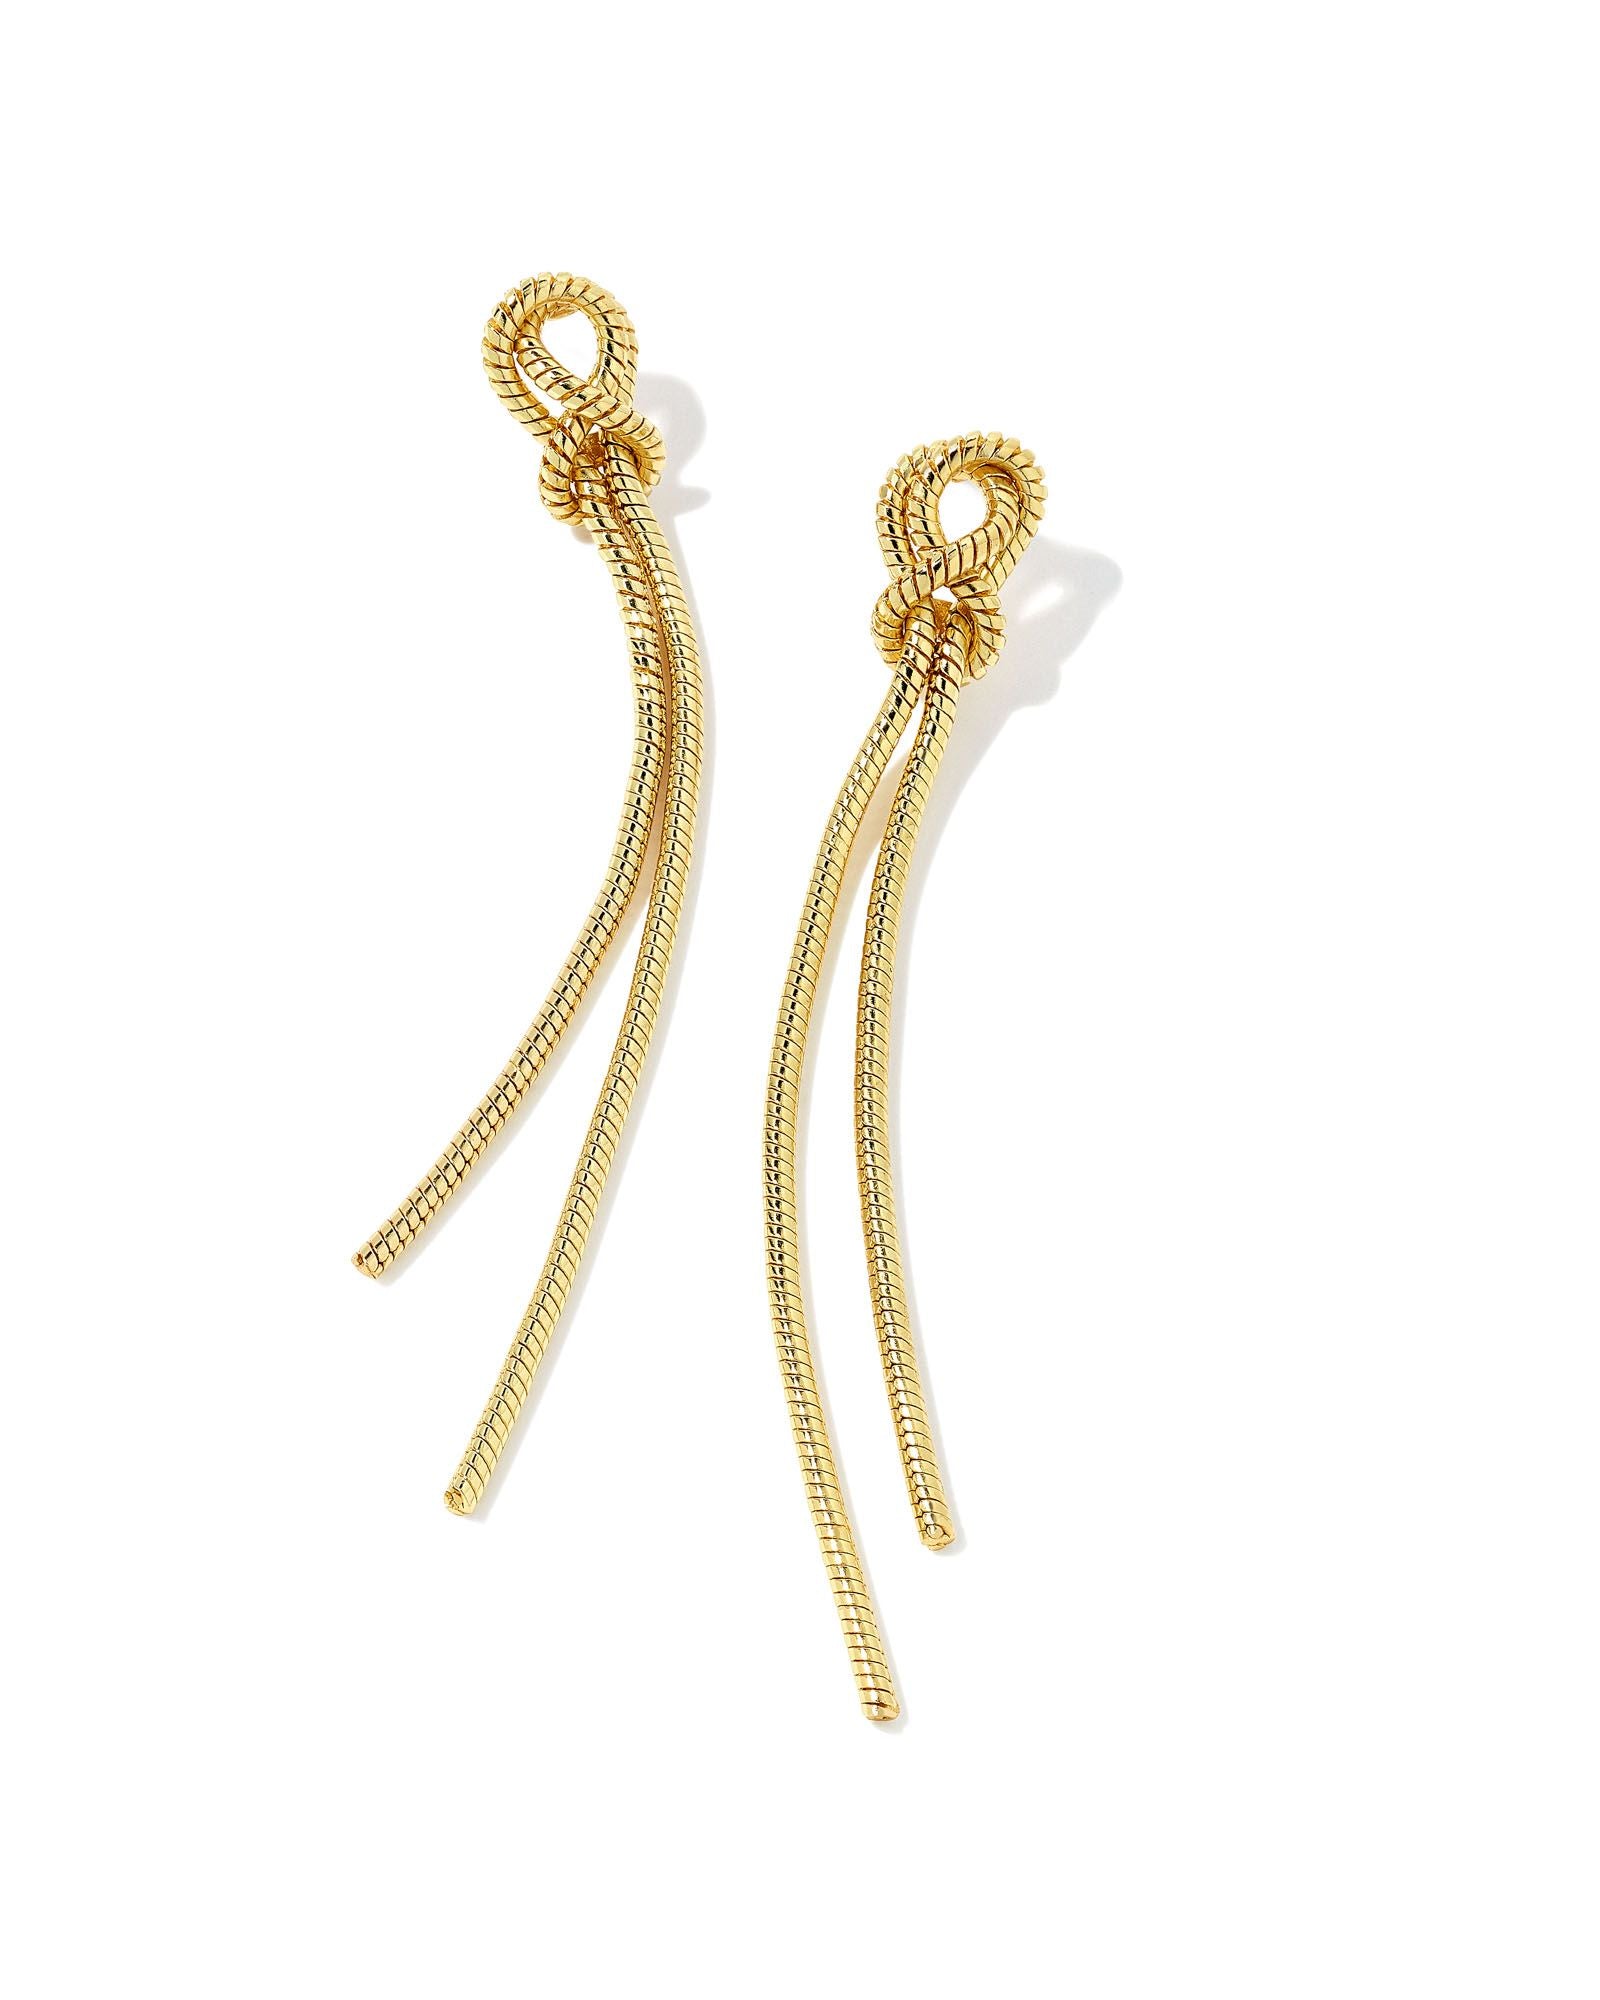 Kendra Scott Annie Linear Earrings Gold Metal-Earrings-Kendra Scott-E1980GLD-The Twisted Chandelier